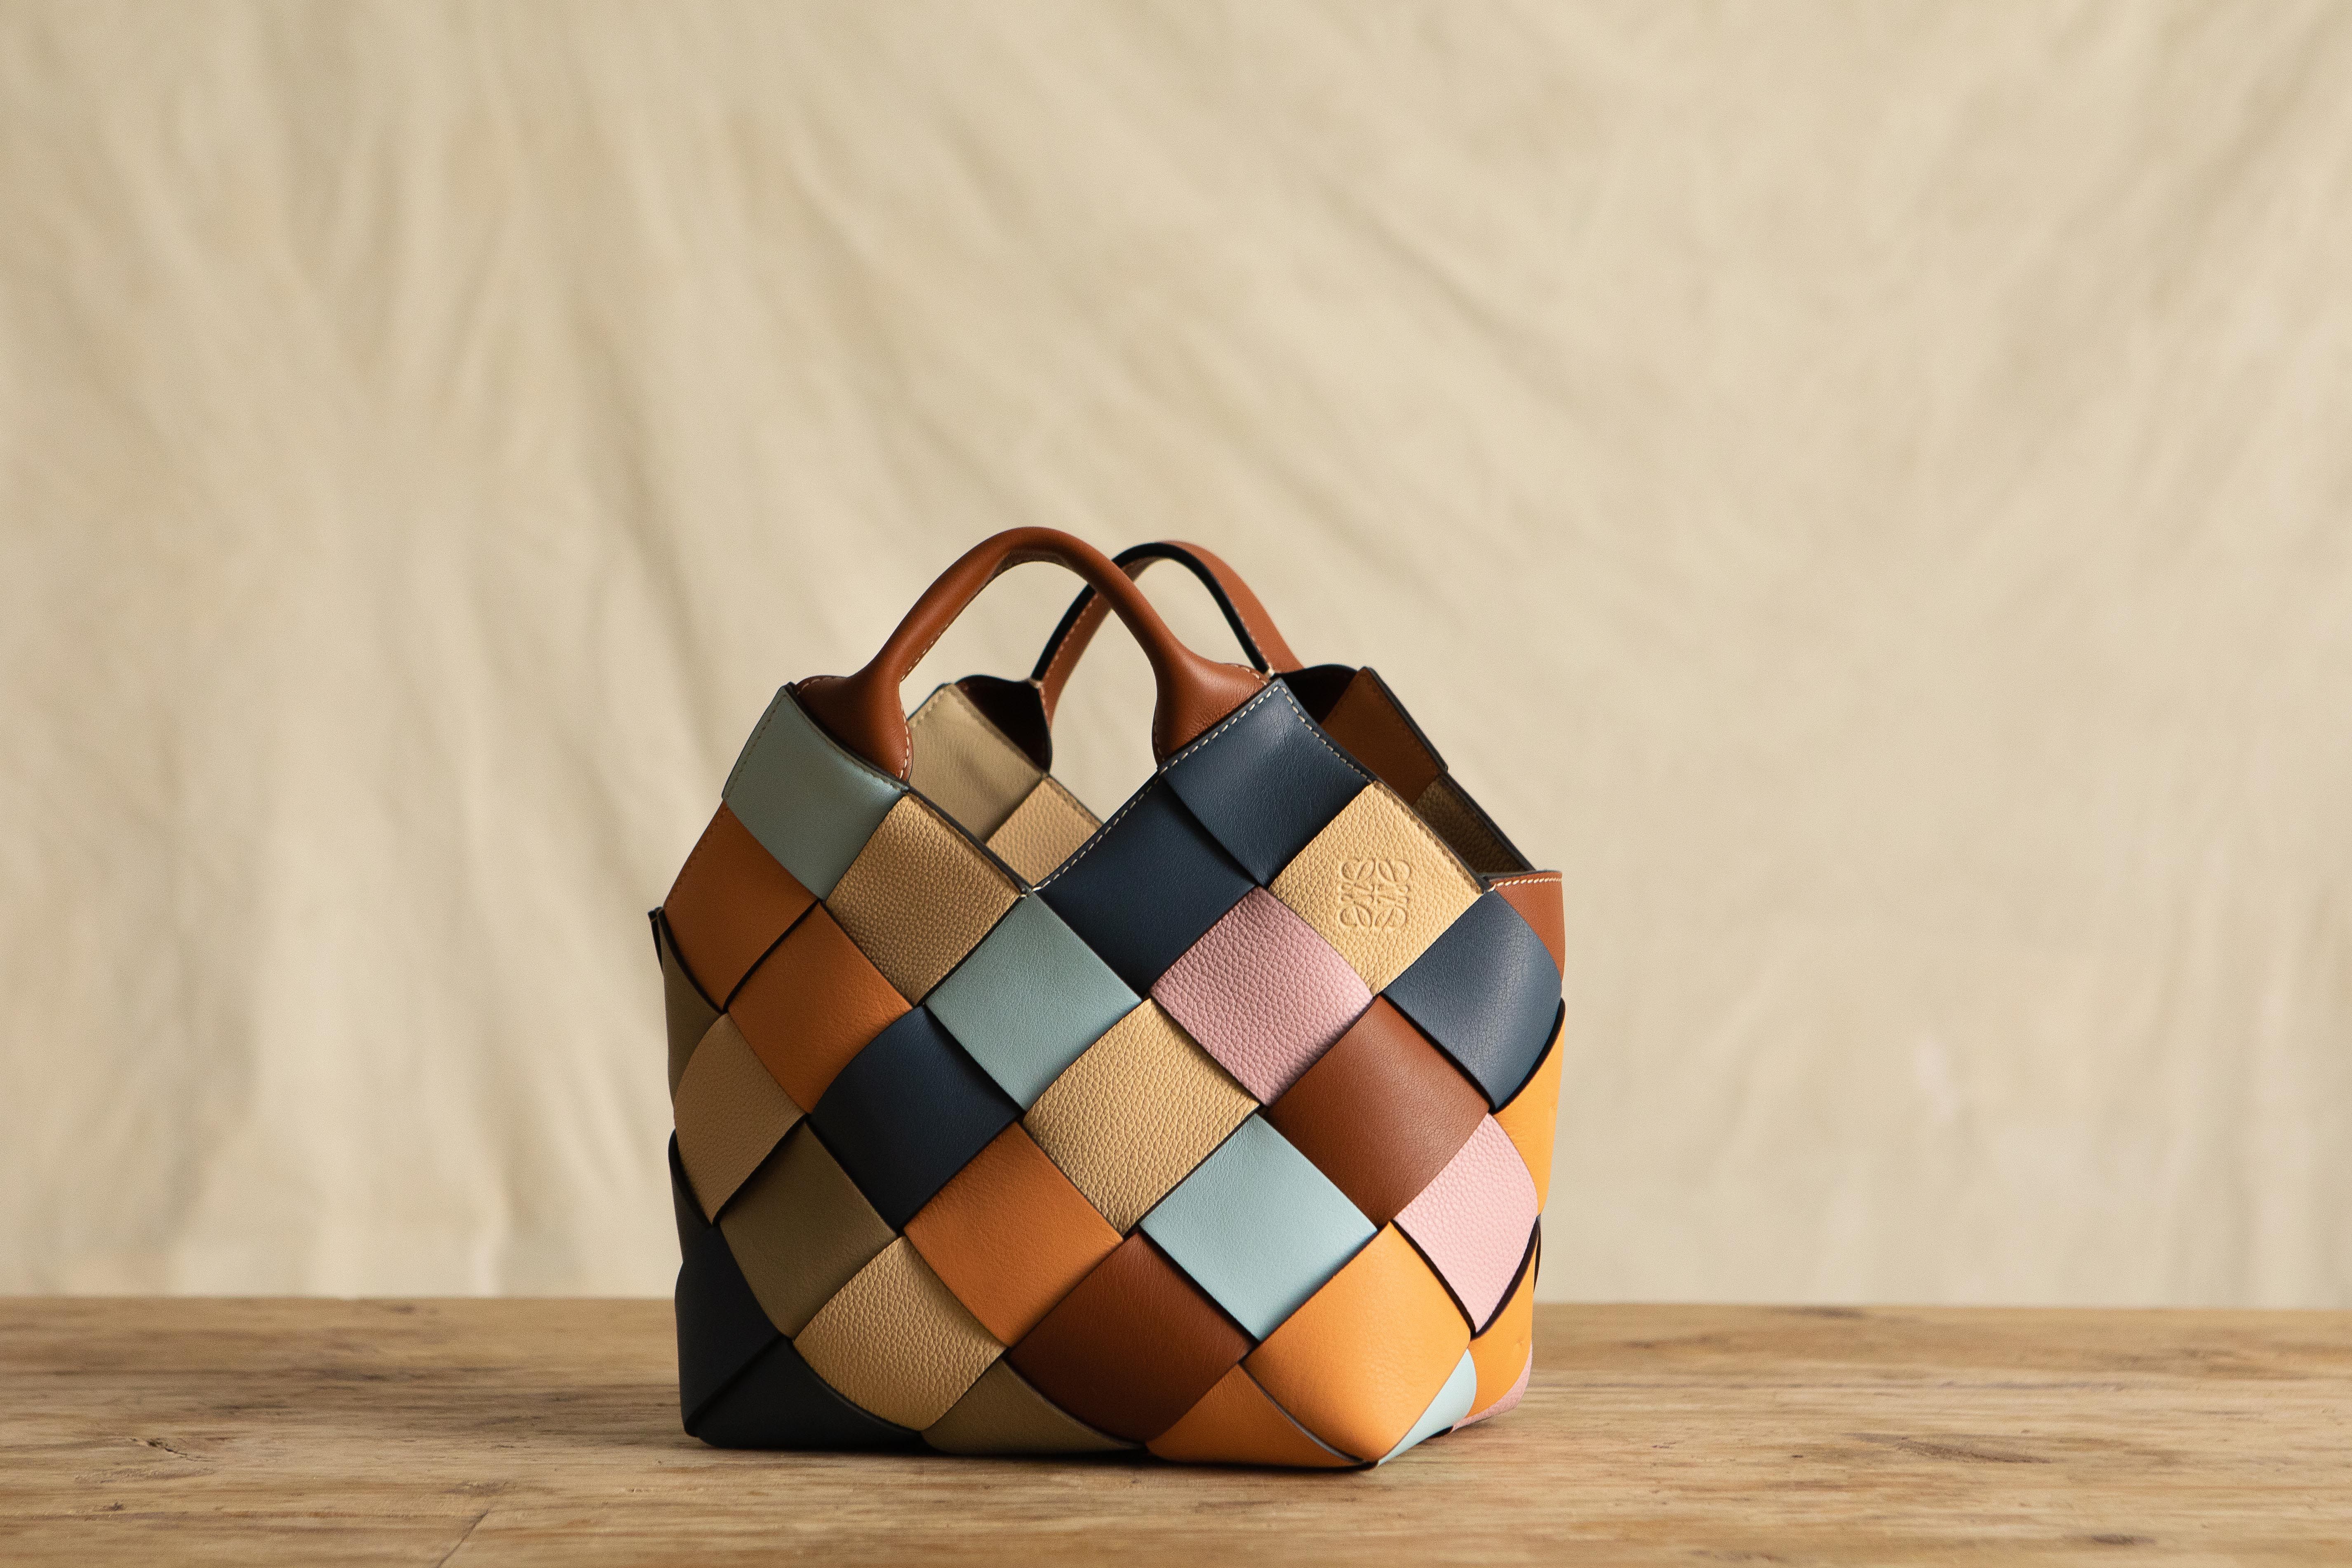 Re-sell Your Loewe Handbags Online